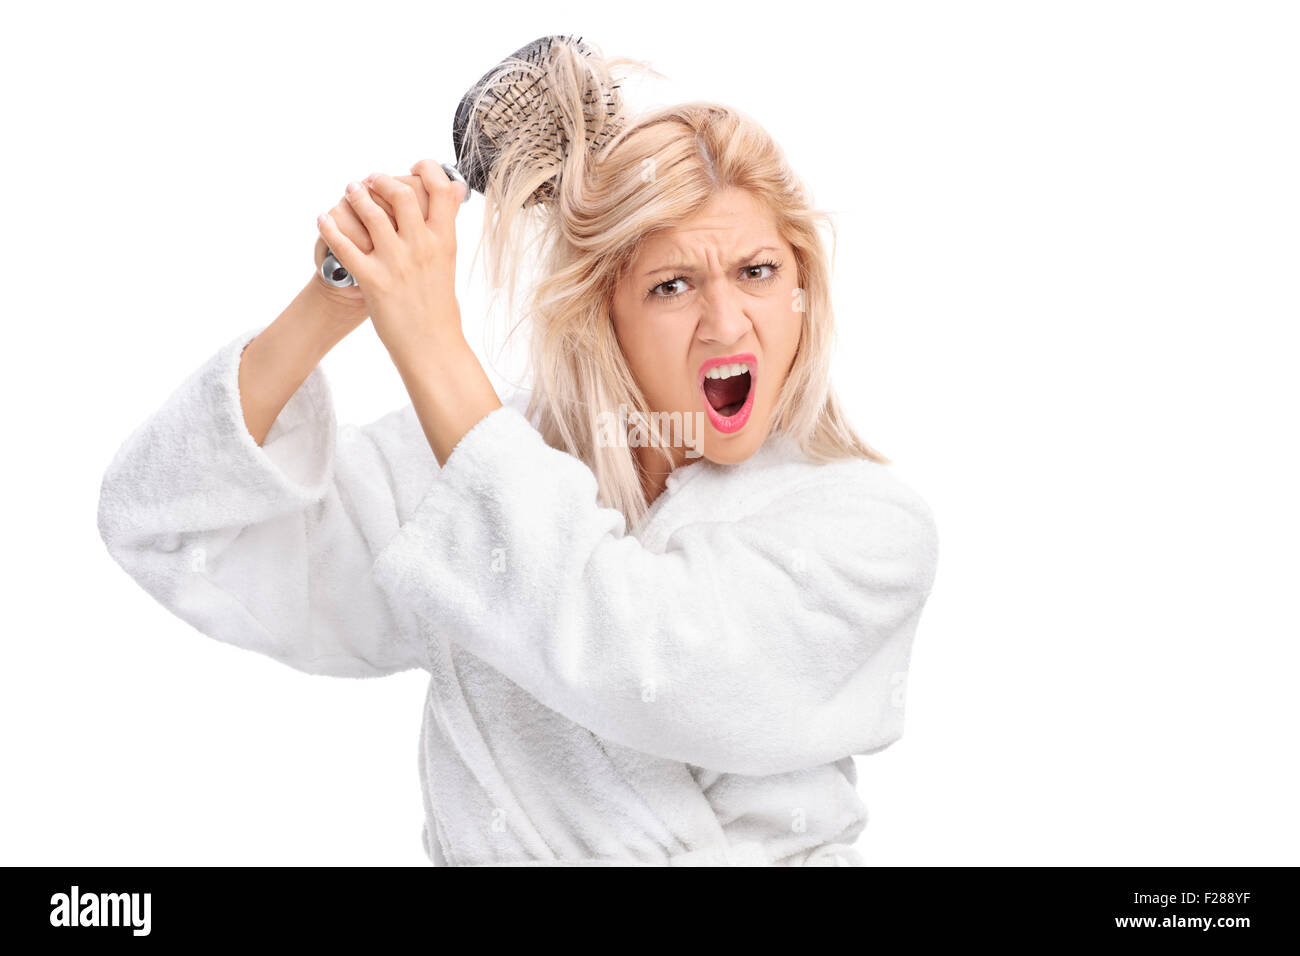 Fille mécontent dans un peignoir blanc avec ses cheveux emmêlé dans une brosse à cheveux isolé sur fond blanc Banque D'Images